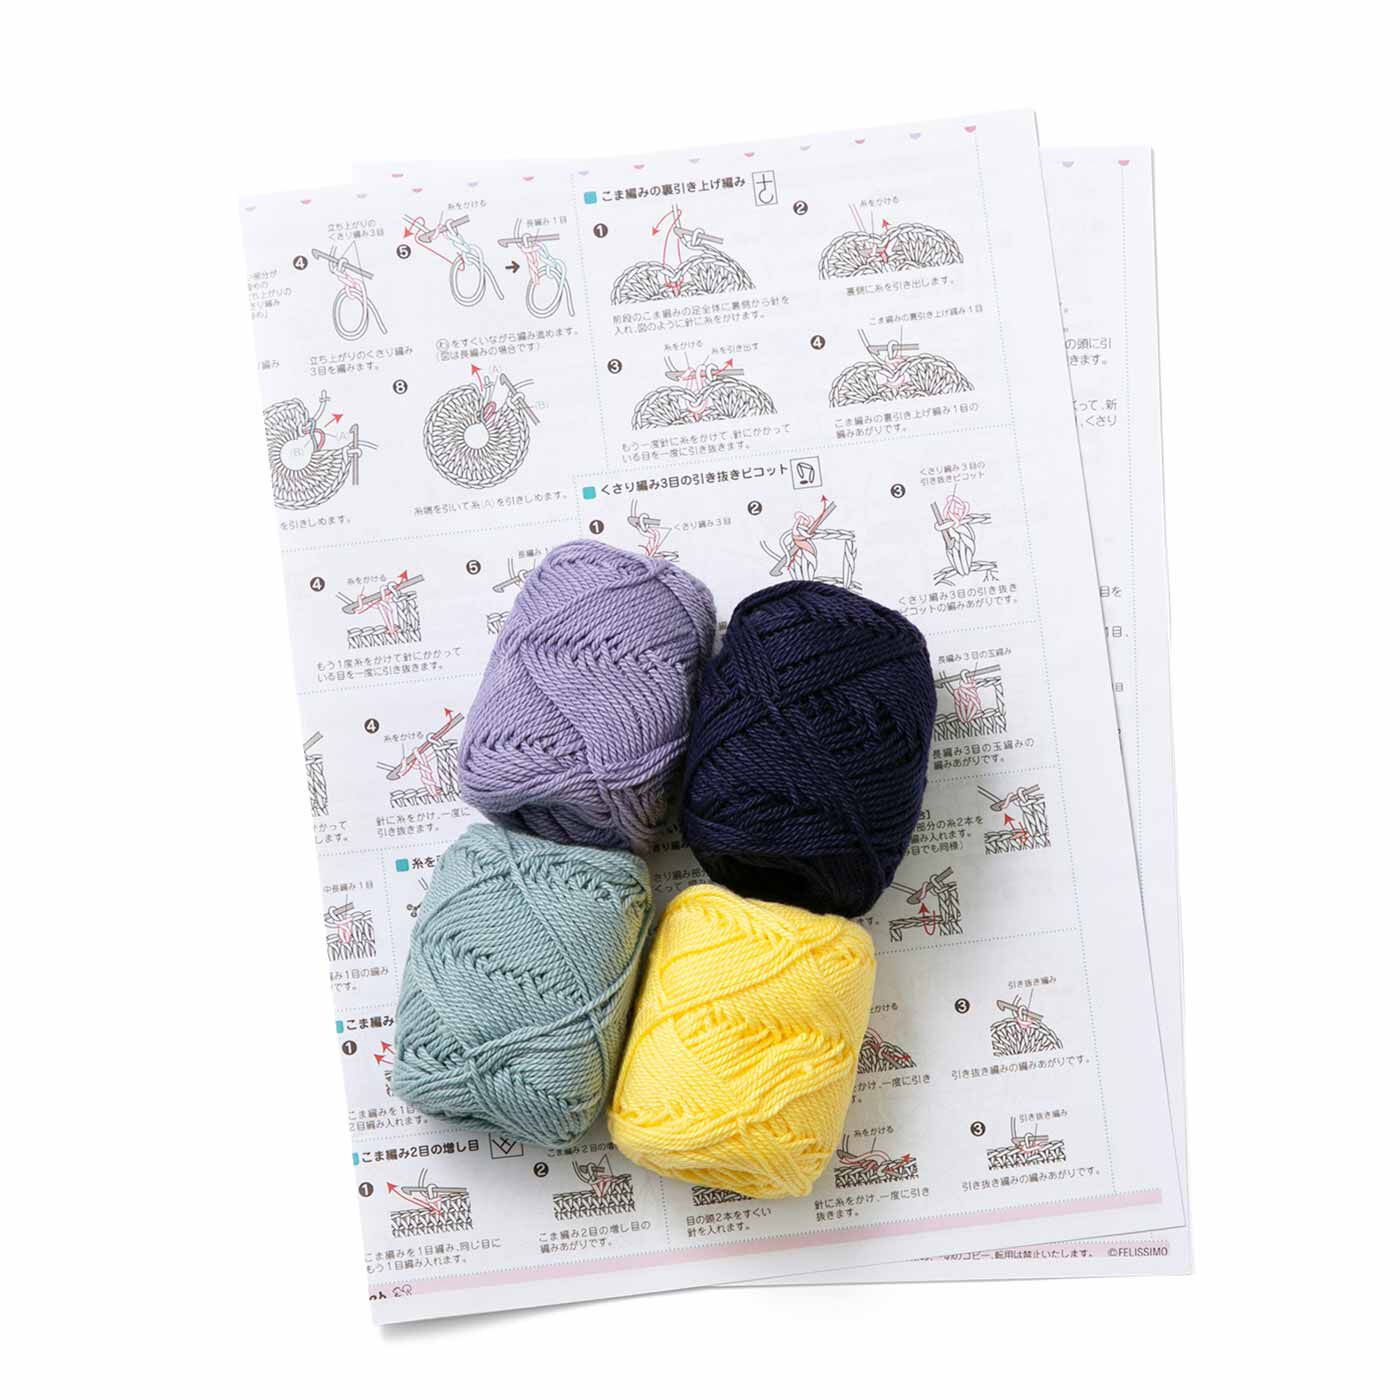 クチュリエ|おしゃれグランマにあこがれて コットン糸かぎ針編みモチーフの会〈ネイビー〉|●1回分のお届けキット例です。